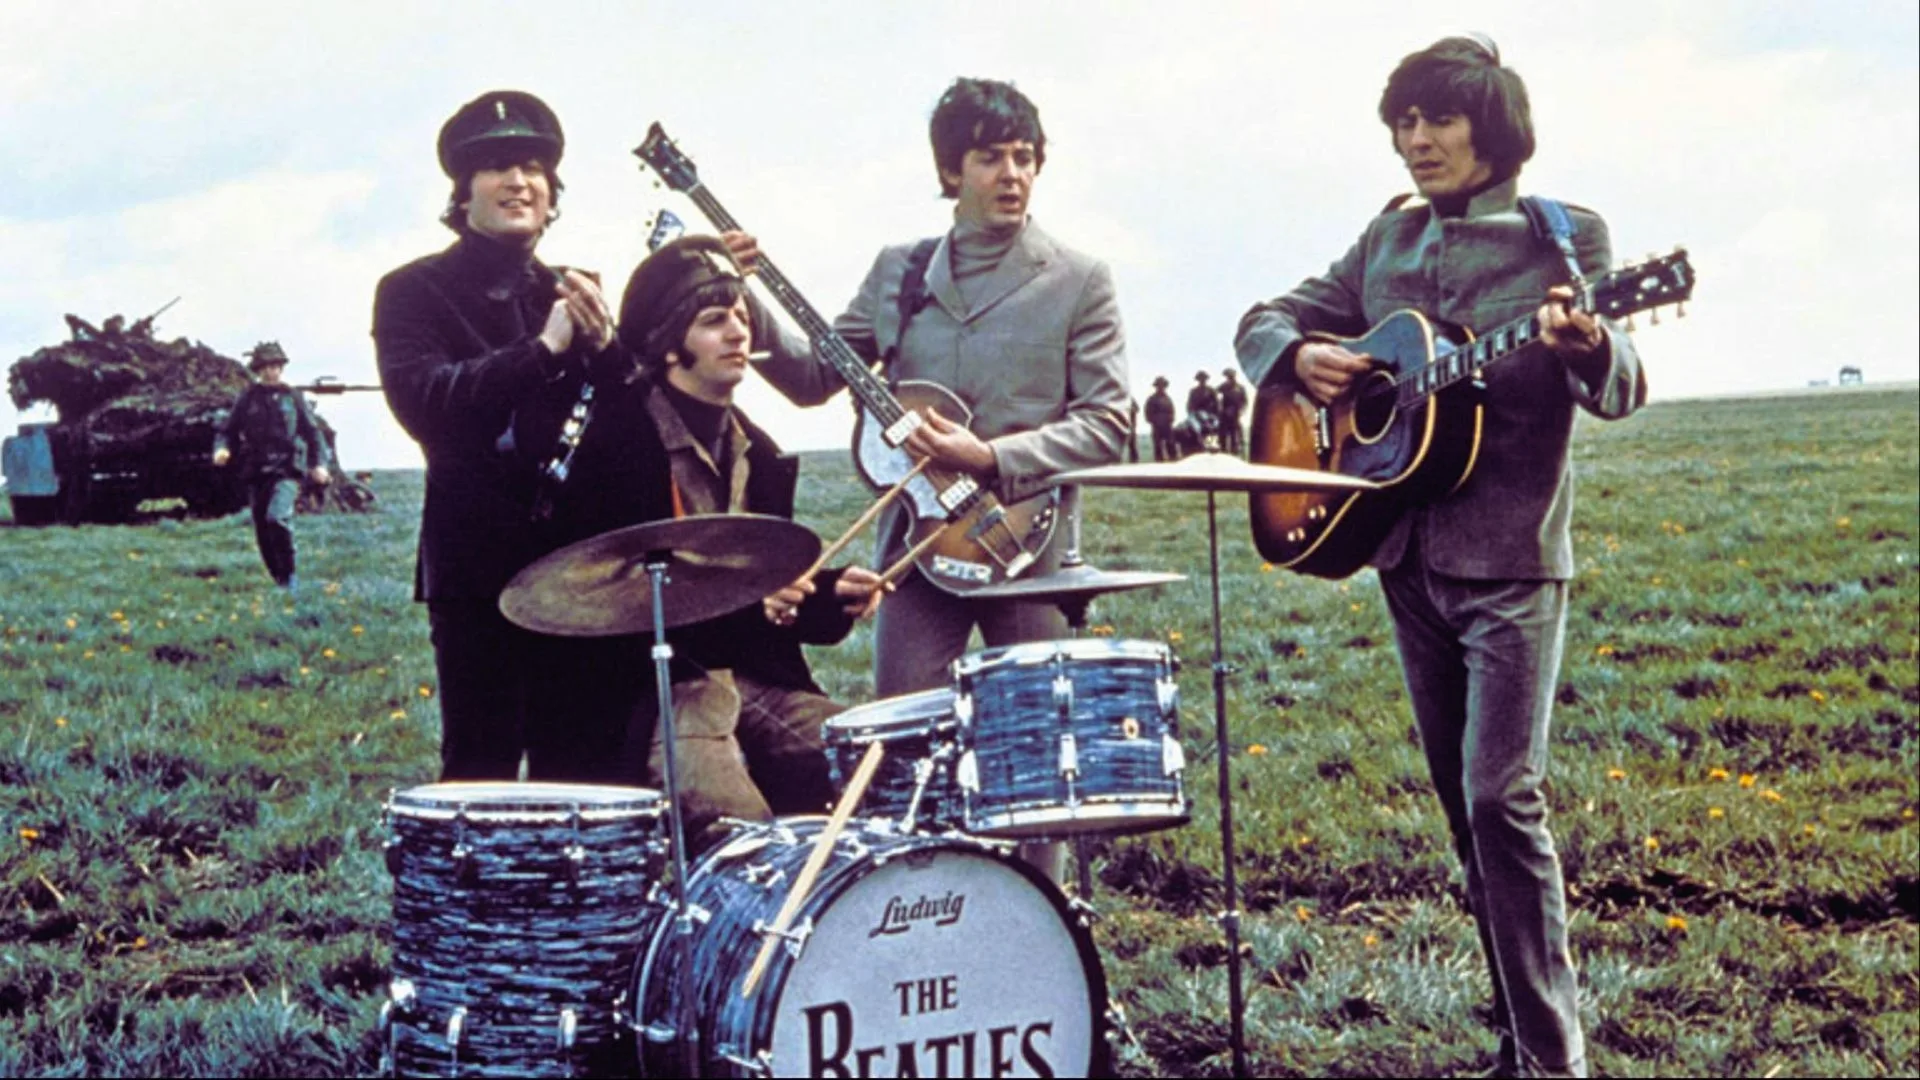 Un repaso a la historia de The Beatles en el cine a través de este ranking de películas.